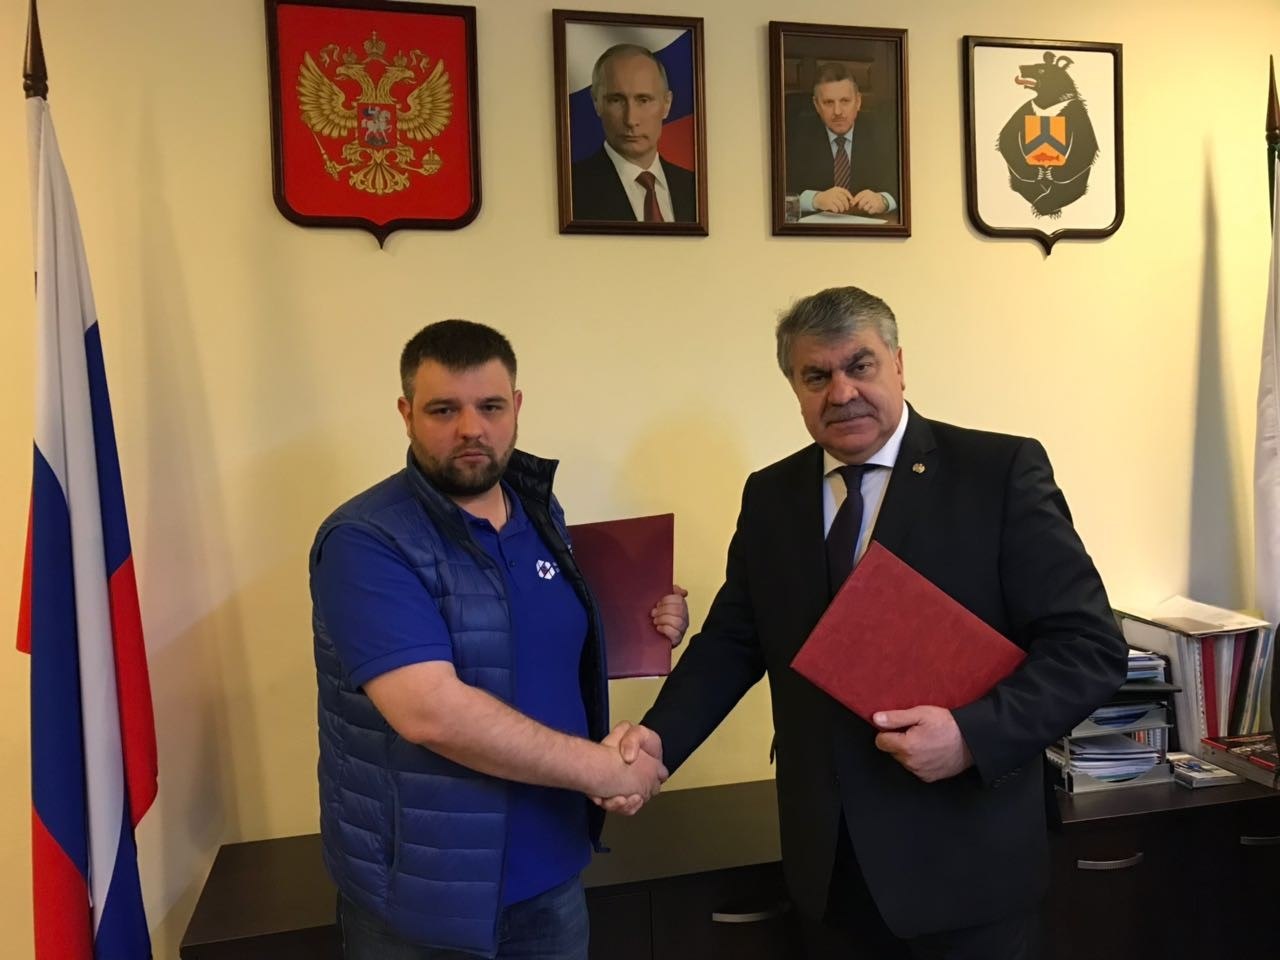 Правительство Хабаровского края и Национальный центр подписали соглашение о сотрудничестве - фото 1